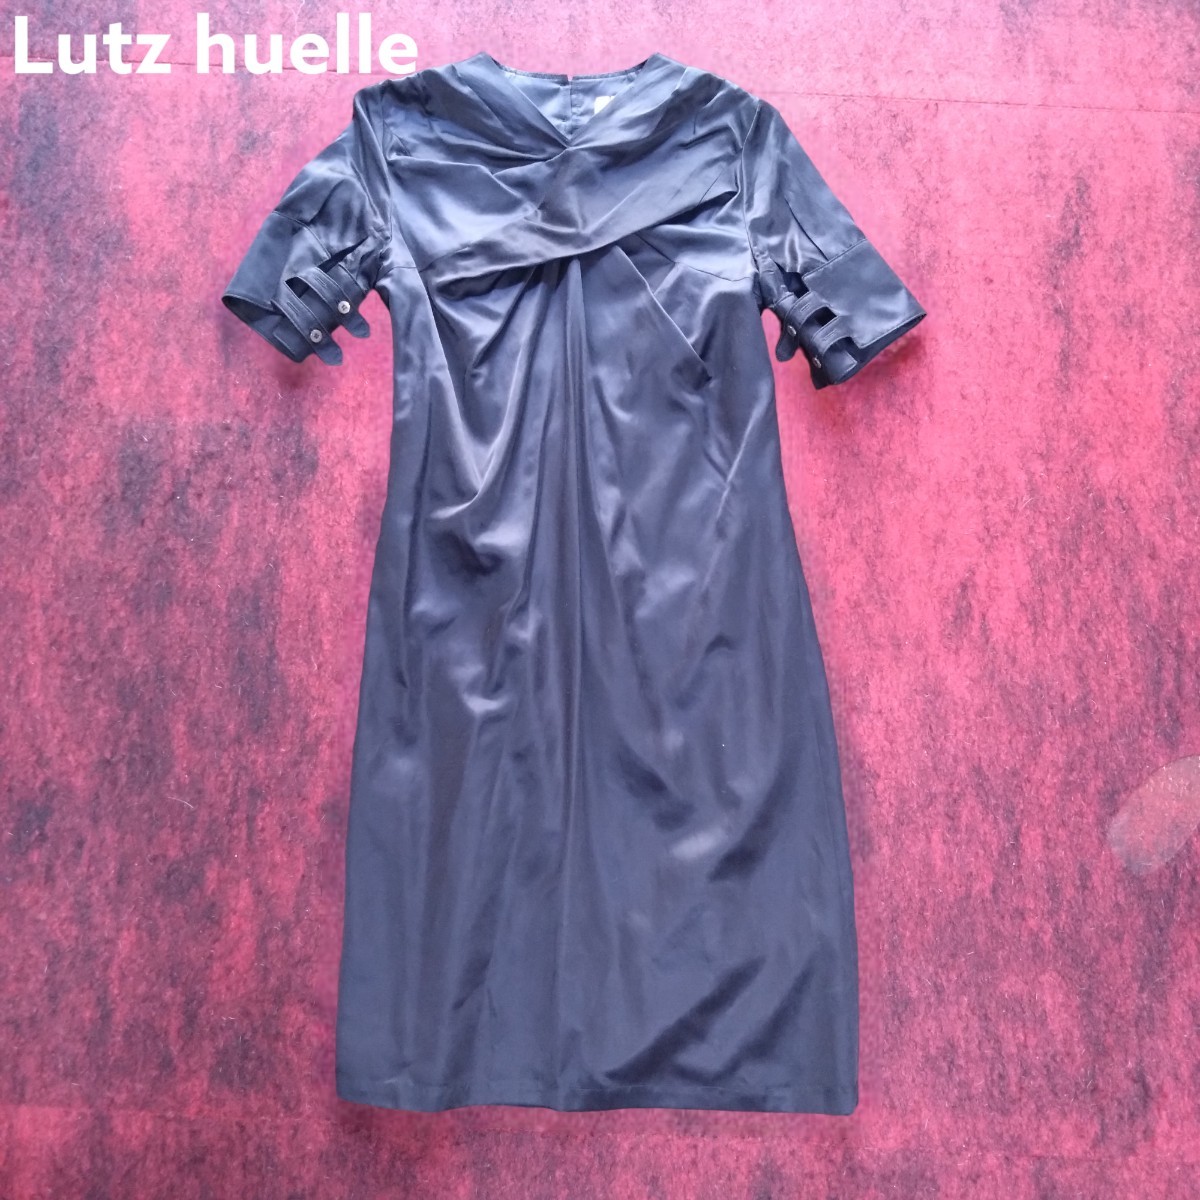 ほぼ未使用 lutz helle ルッツヒュエル シルクコットン ワンピース 半袖 ブラック 黒 冠婚葬祭 フランス製 フォーマル ドレス